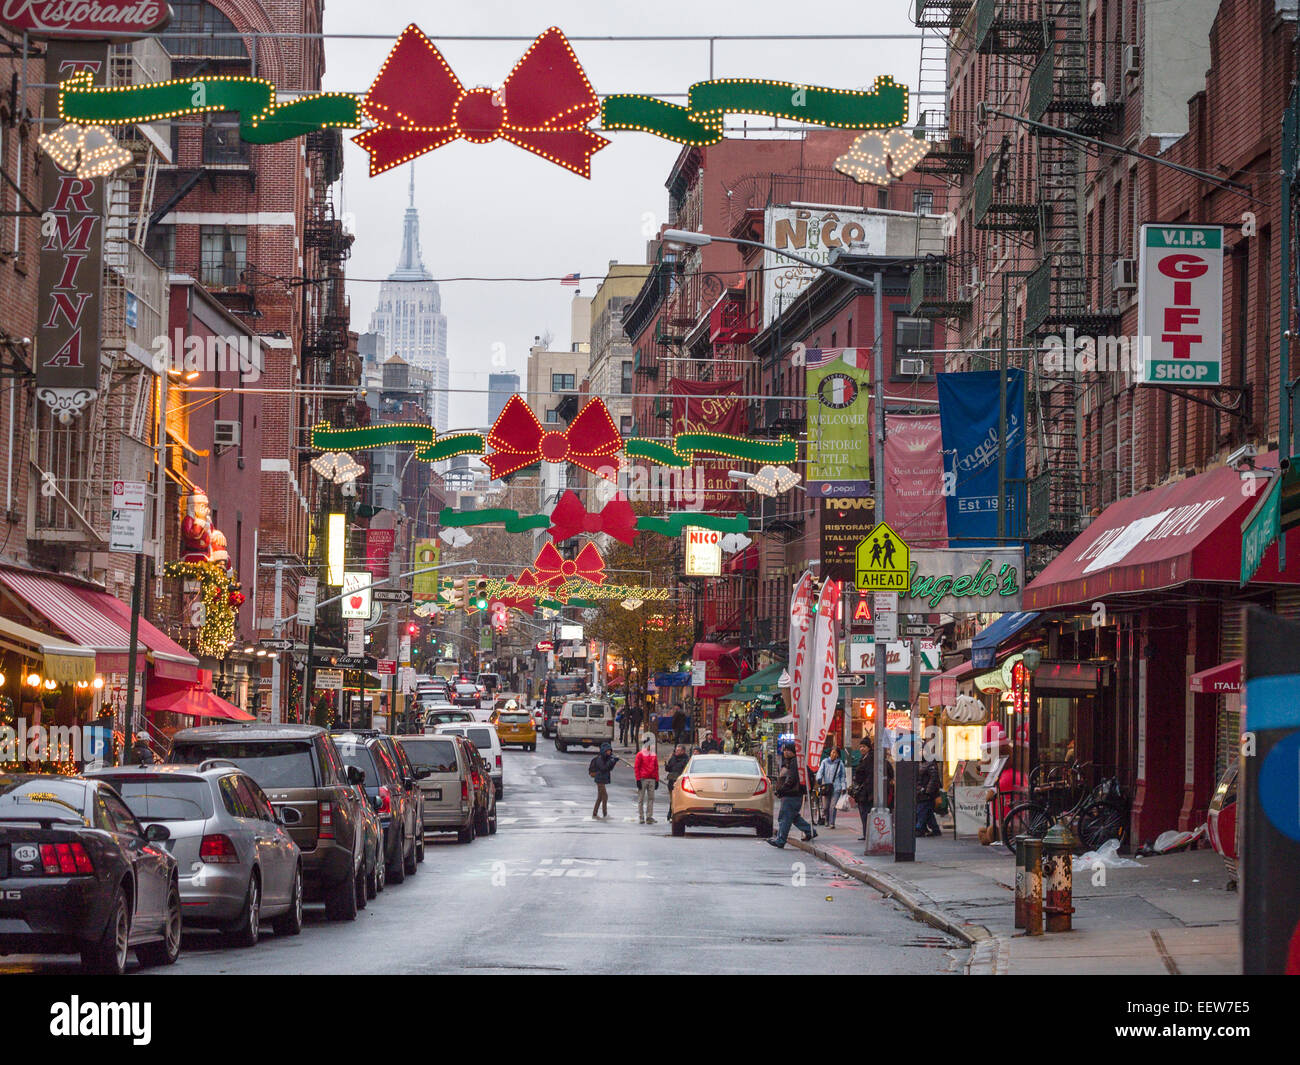 La petite Italie tous habillés pour Noël. Red bows. s'allume et un Joyeux Noël s'égayer la petite Italie de New York en décembre. Banque D'Images